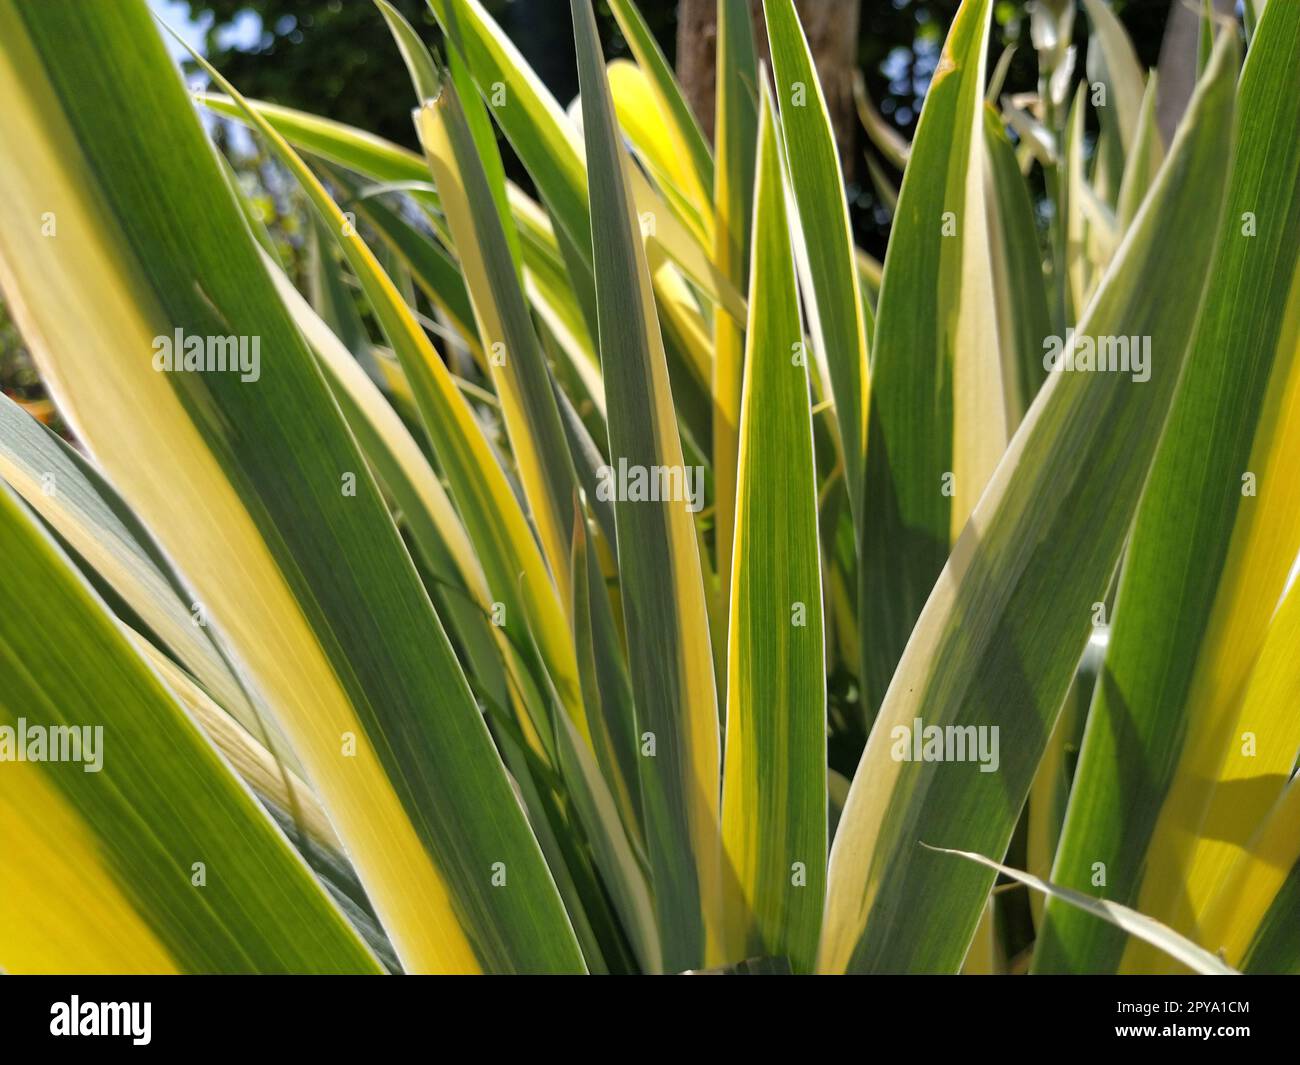 Nahaufnahme von gelb-grün gestreiften Blättern. Iris im Garten. Zur Gattung der mehrjährigen Rhizompflanzen der Iris-Familie. Gelb-grüne, lange gestreifte Blätter. Blumenhintergrund. Gartenarbeit. Stockfoto